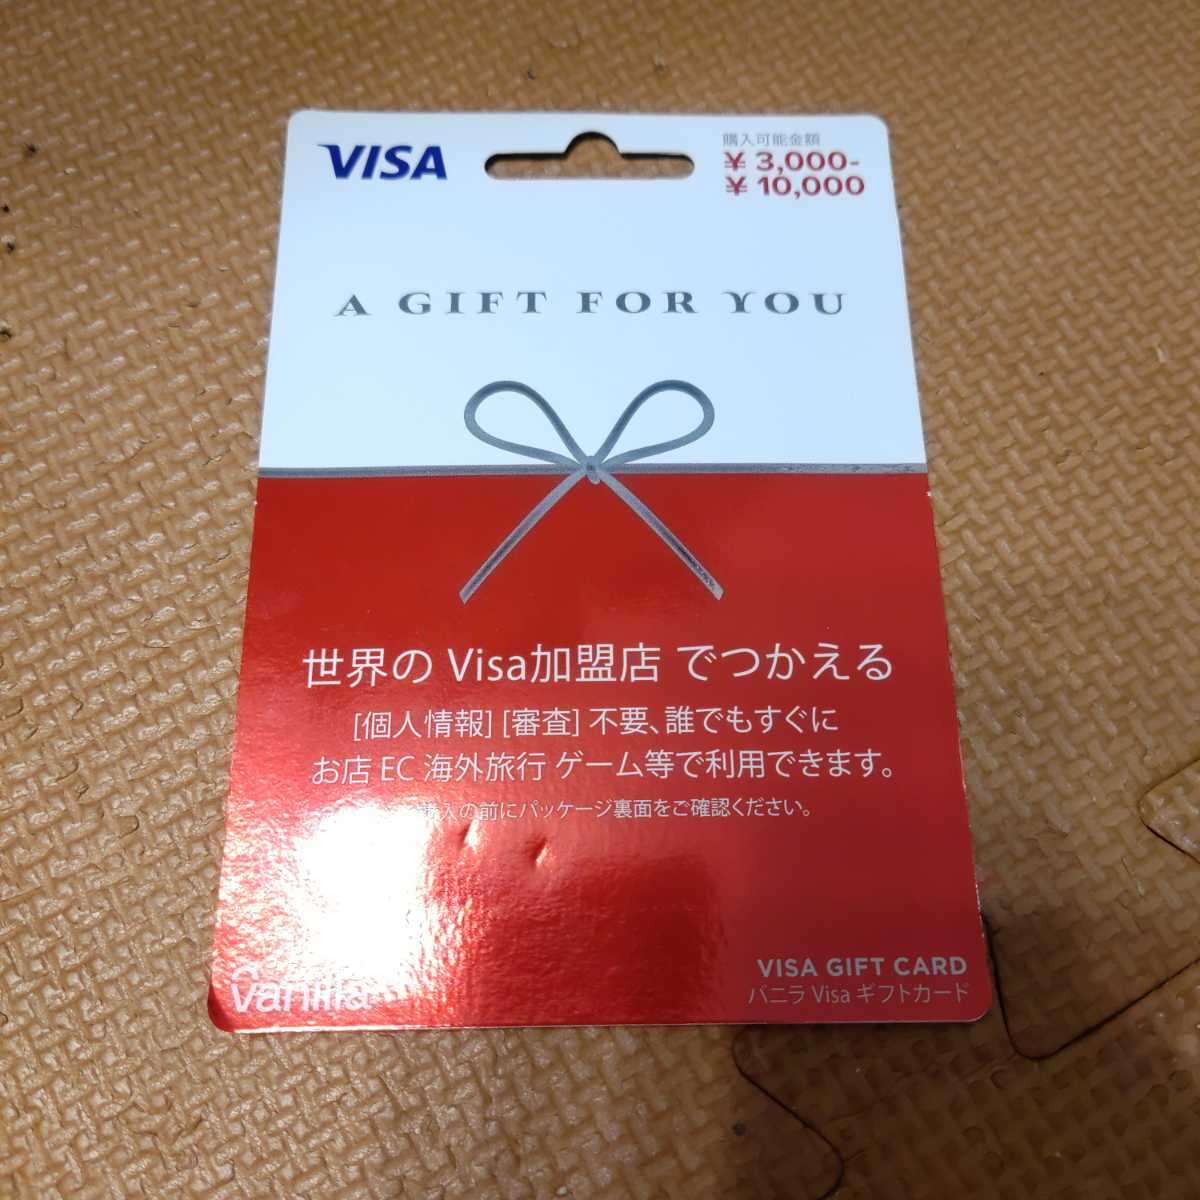 バニラ Visaギフトカード5000円分 プリペイドカード 売買されたオークション情報 Yahooの商品情報をアーカイブ公開 オークファン Aucfan Com